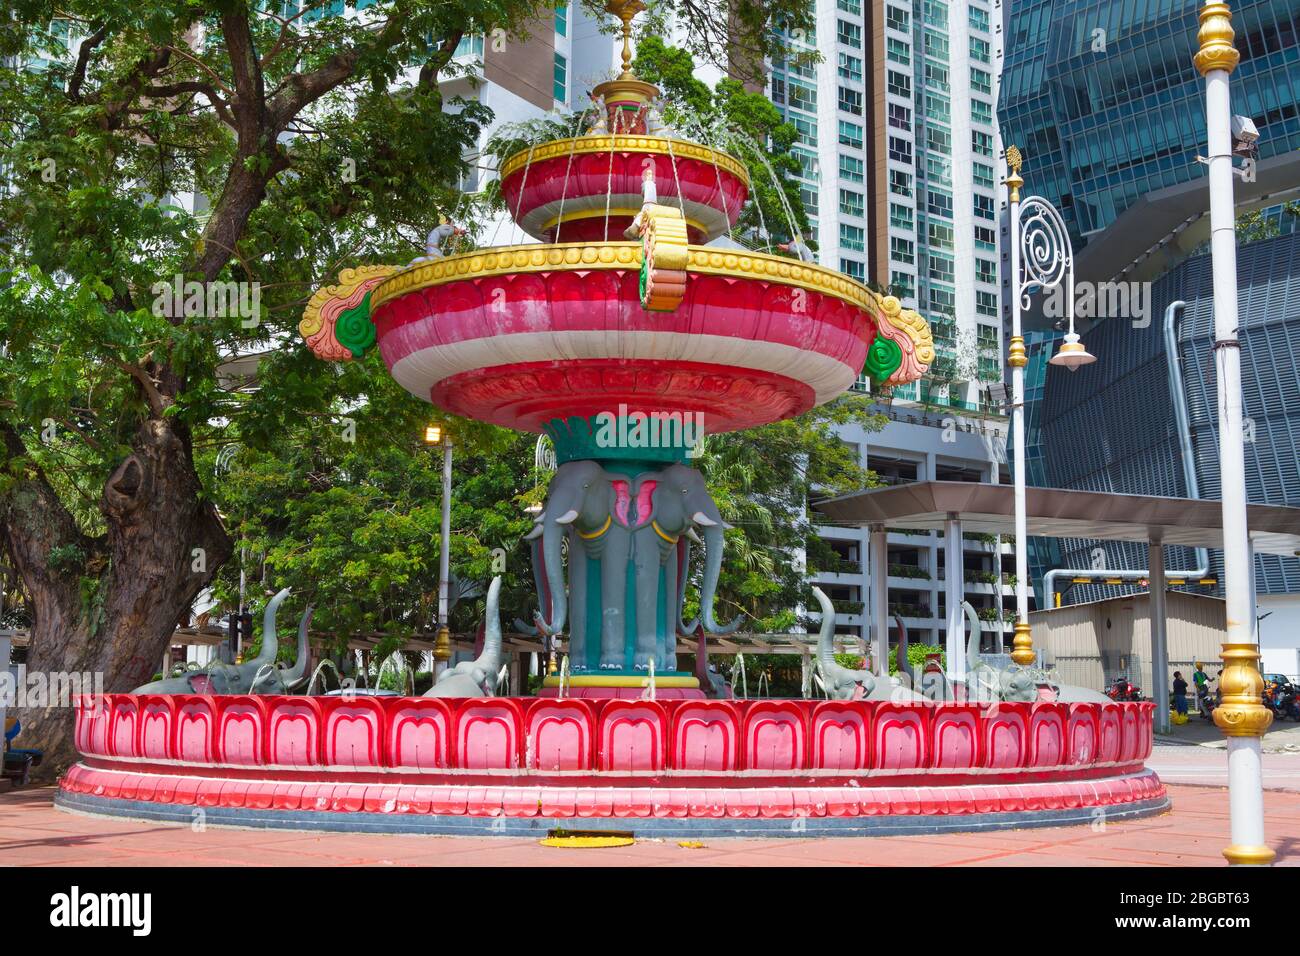 Elephant roundabout, Little India, Brickfields, Kuala Lumpur, Malaysia. Stock Photo